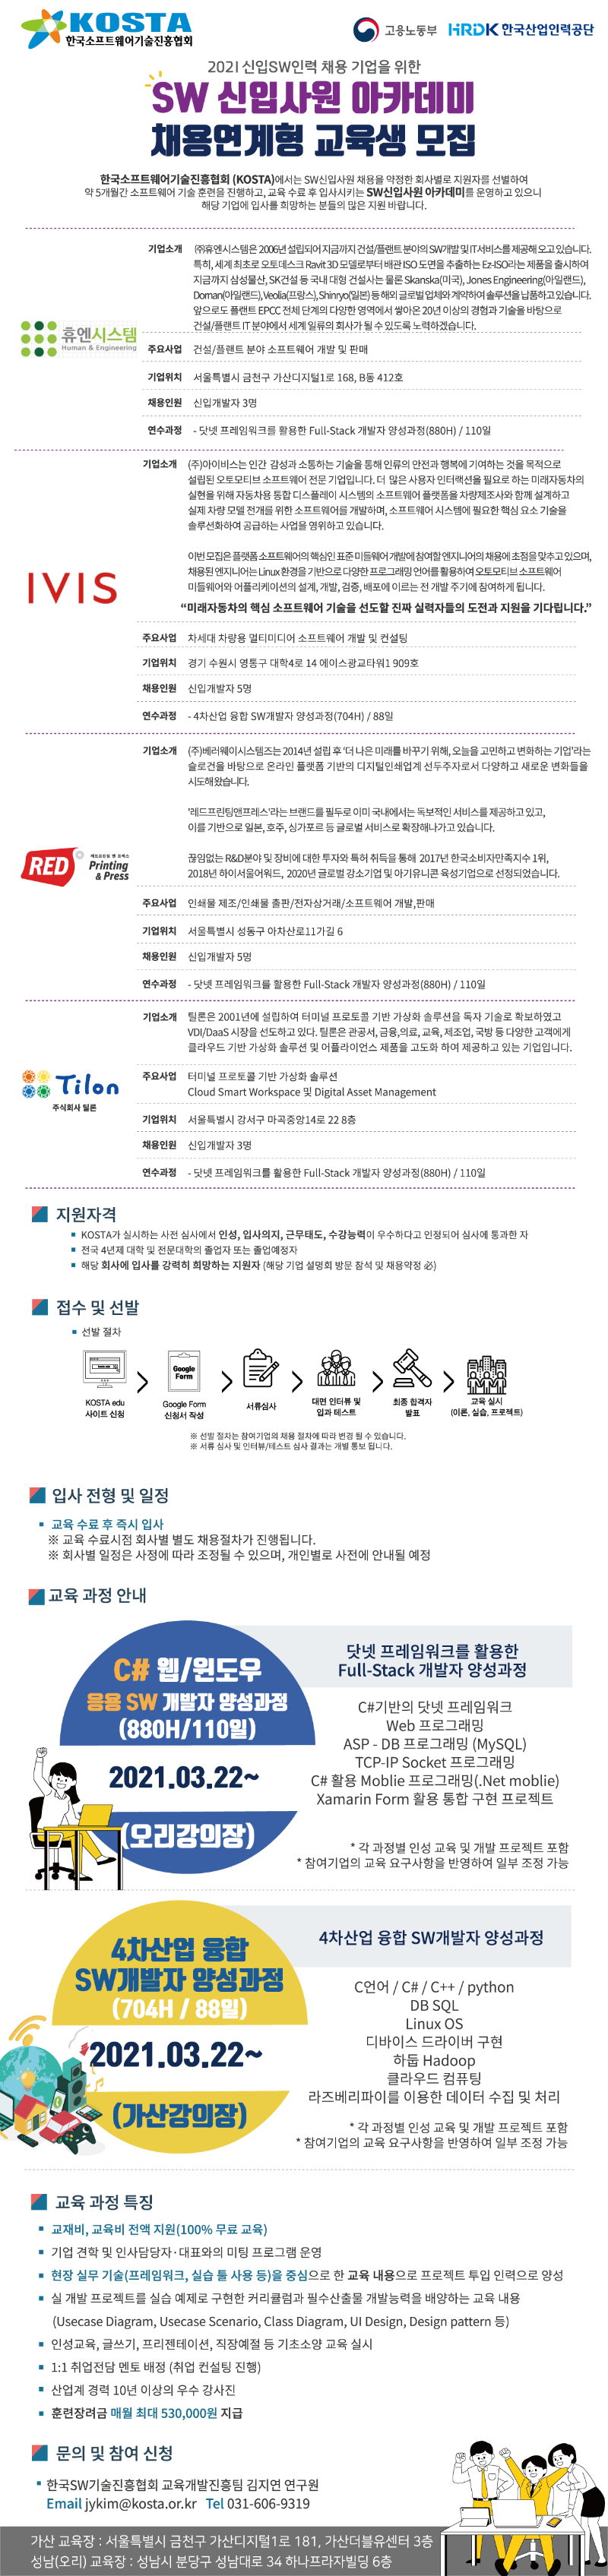 2021년도 채용연계형 교육생 모집(한국SW기술진흥협회).png